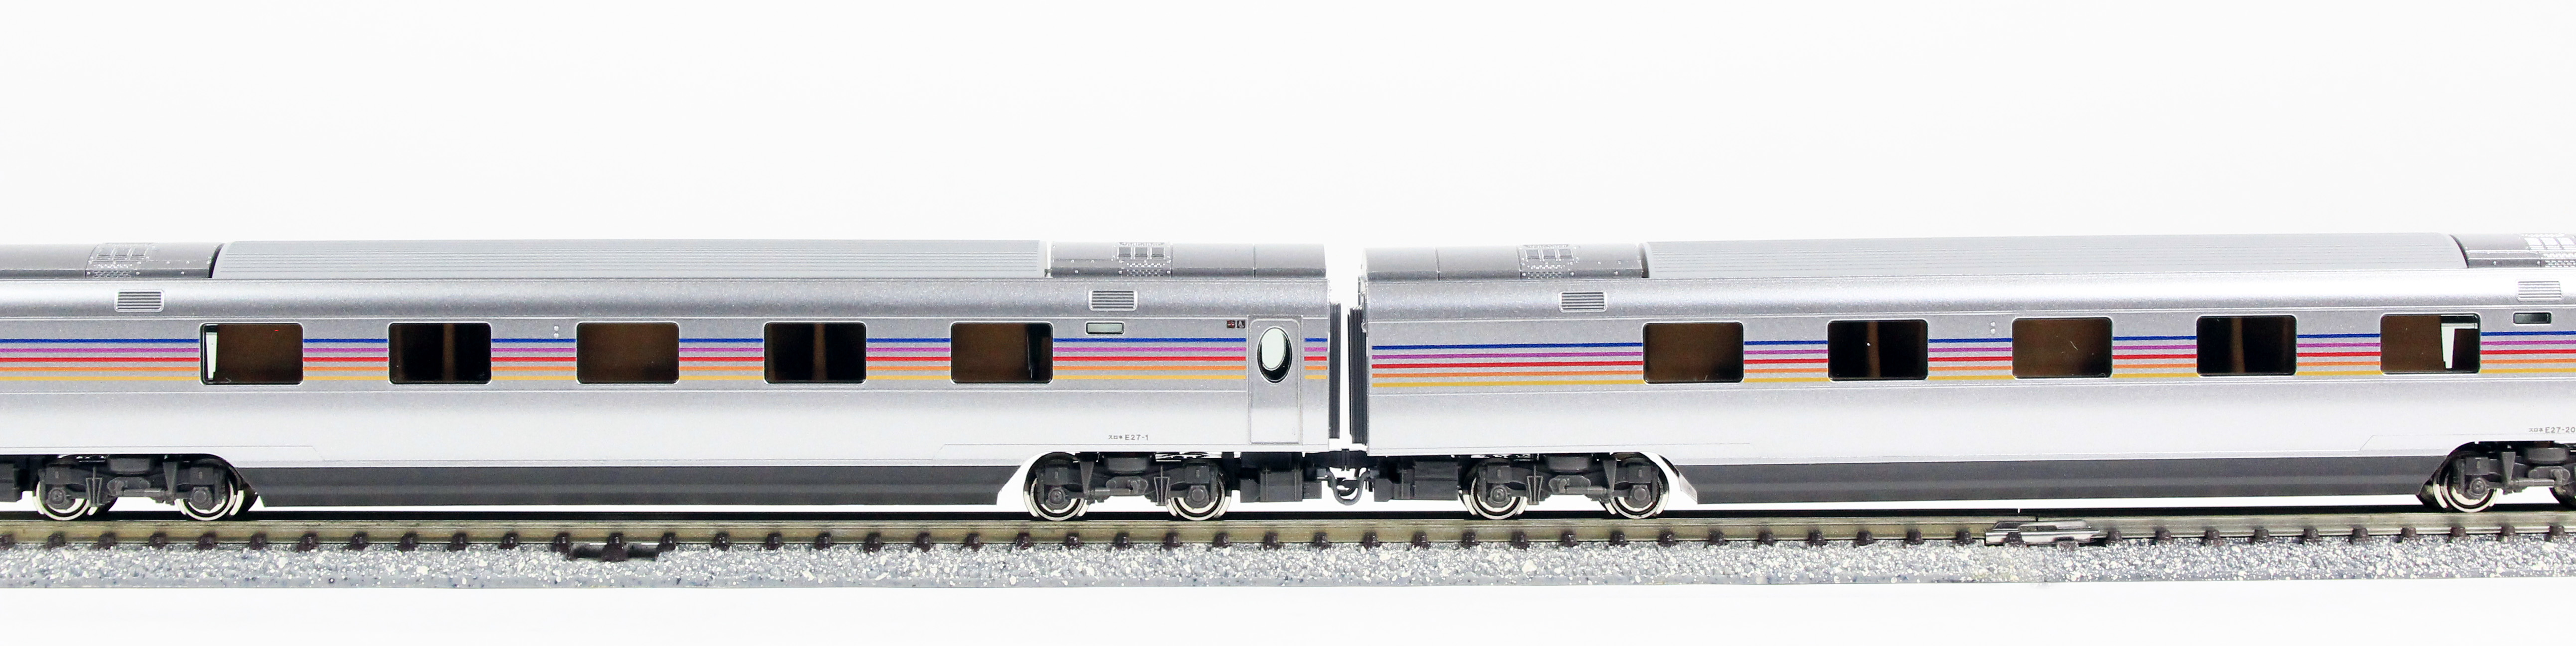 【入荷処理】3066-6 10-834 10-835 カシオペア 鉄道模型